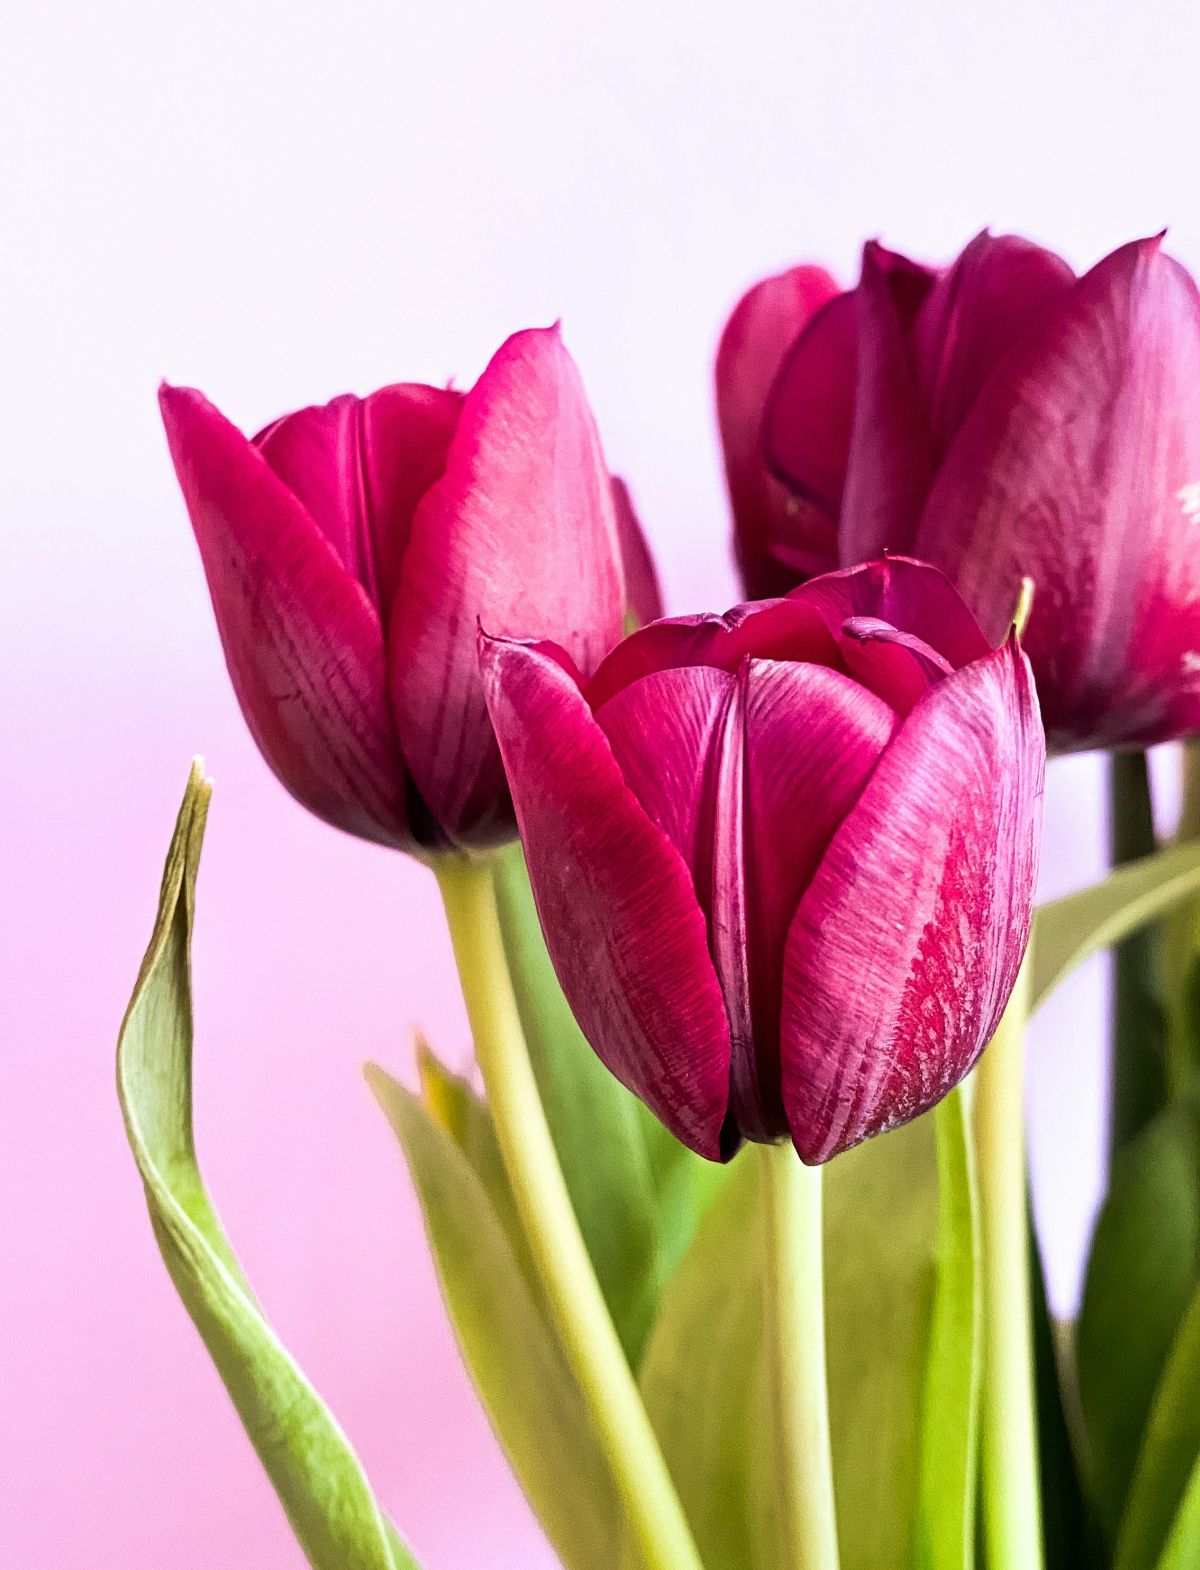 kako tulipane održati svježima u vazi